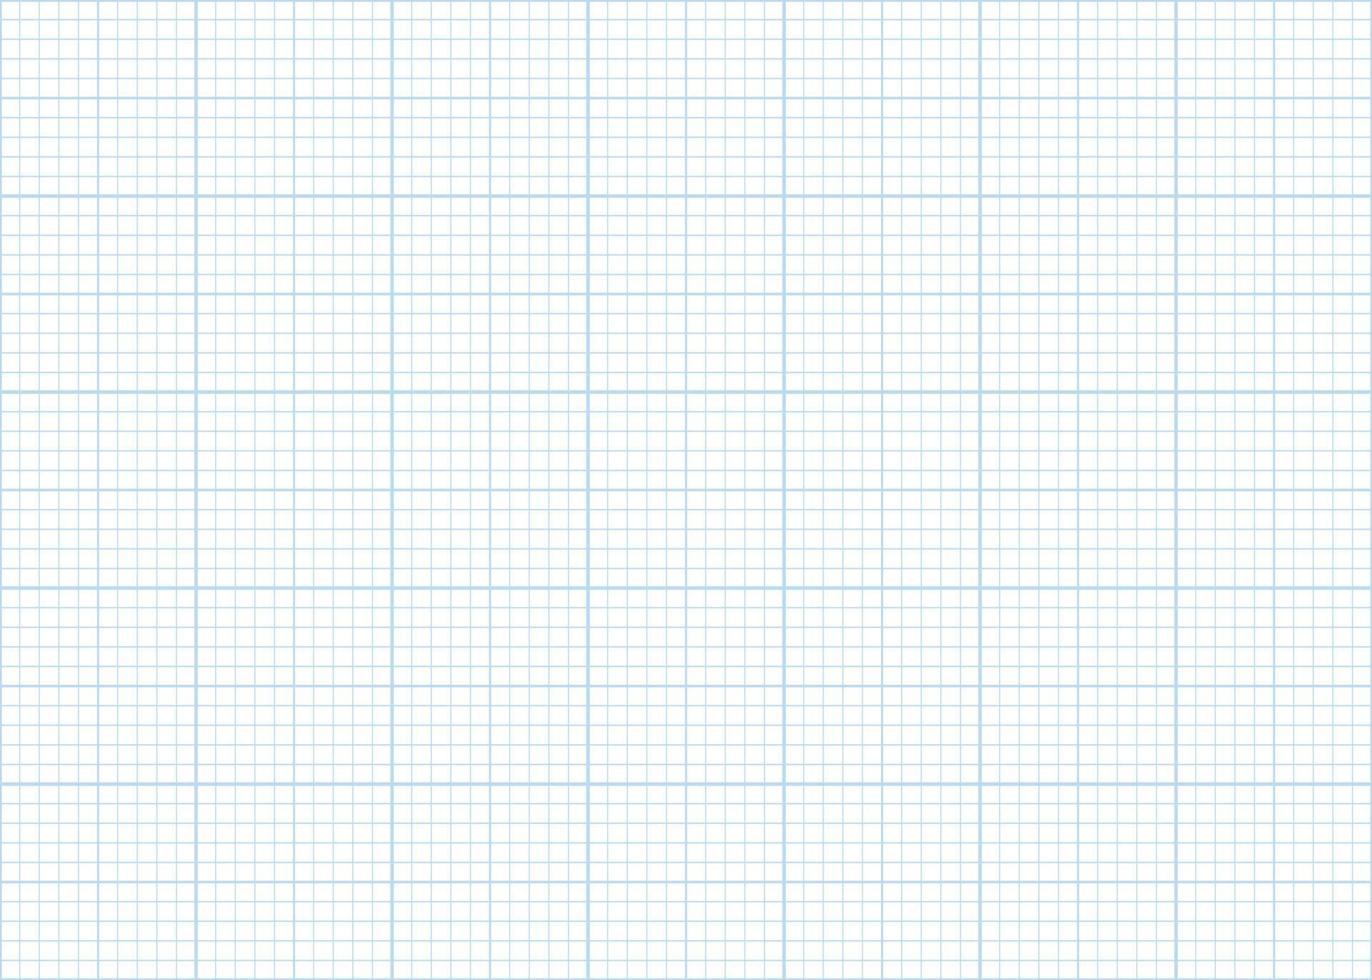 millimeter Graf papper rutnät sömlös mönster. abstrakt geometrisk kvadrat bakgrund. linje plan mönster för skola, teknisk teknik skala mått. vektor illustration på vit bakgrund